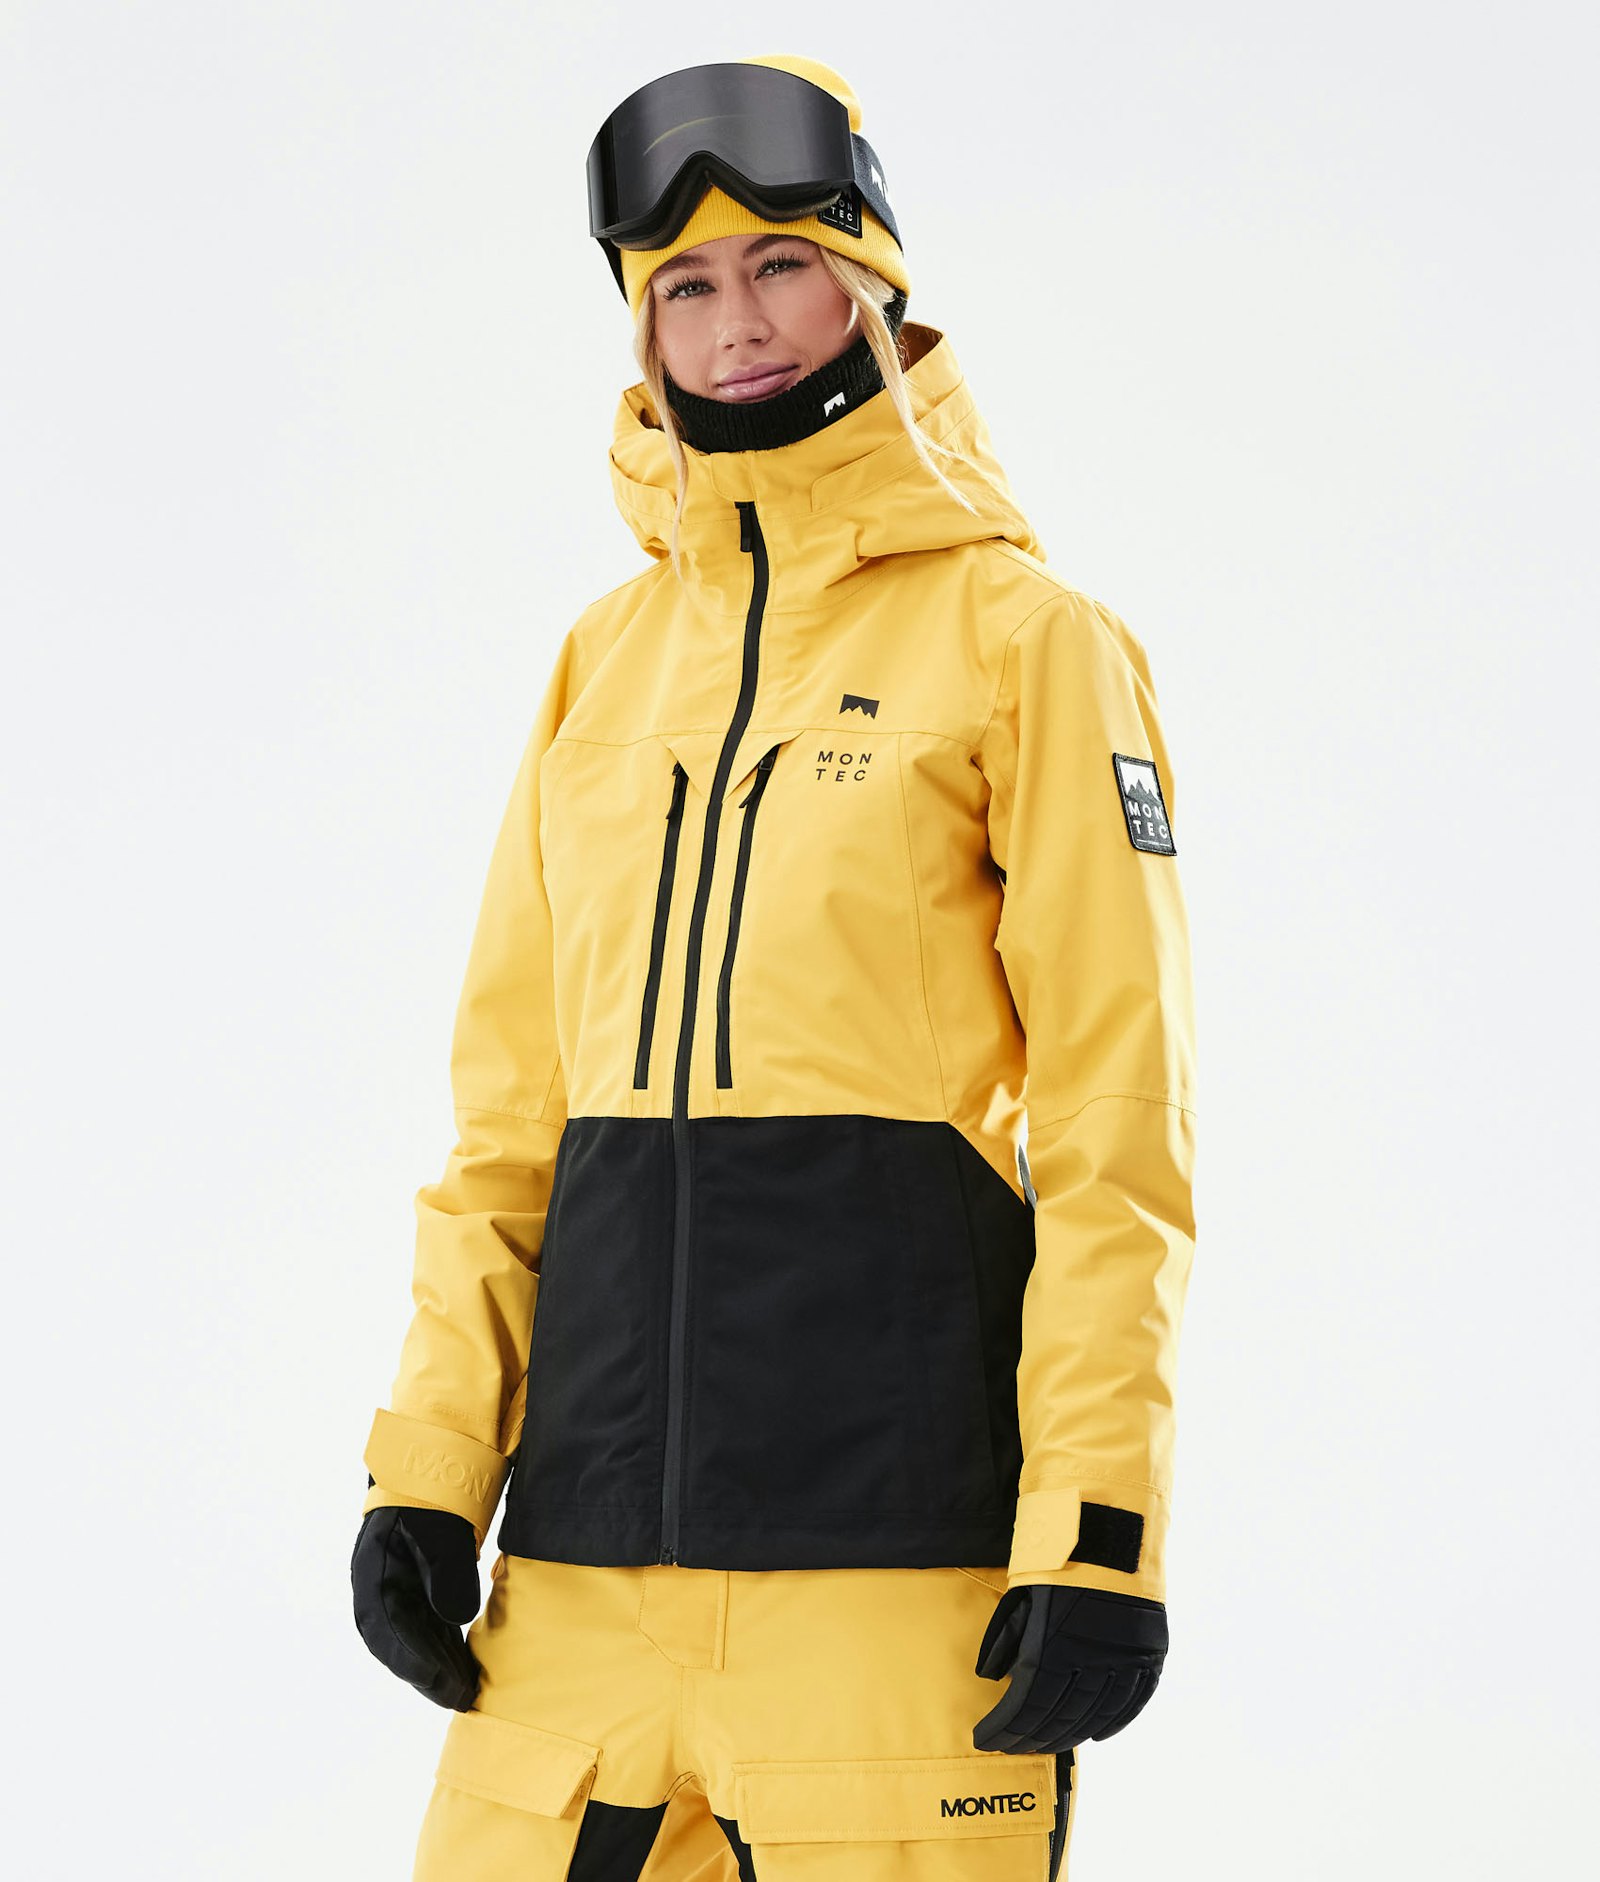 Moss W 2021 スキージャケット レディース Yellow/Black, 画像1 / 12